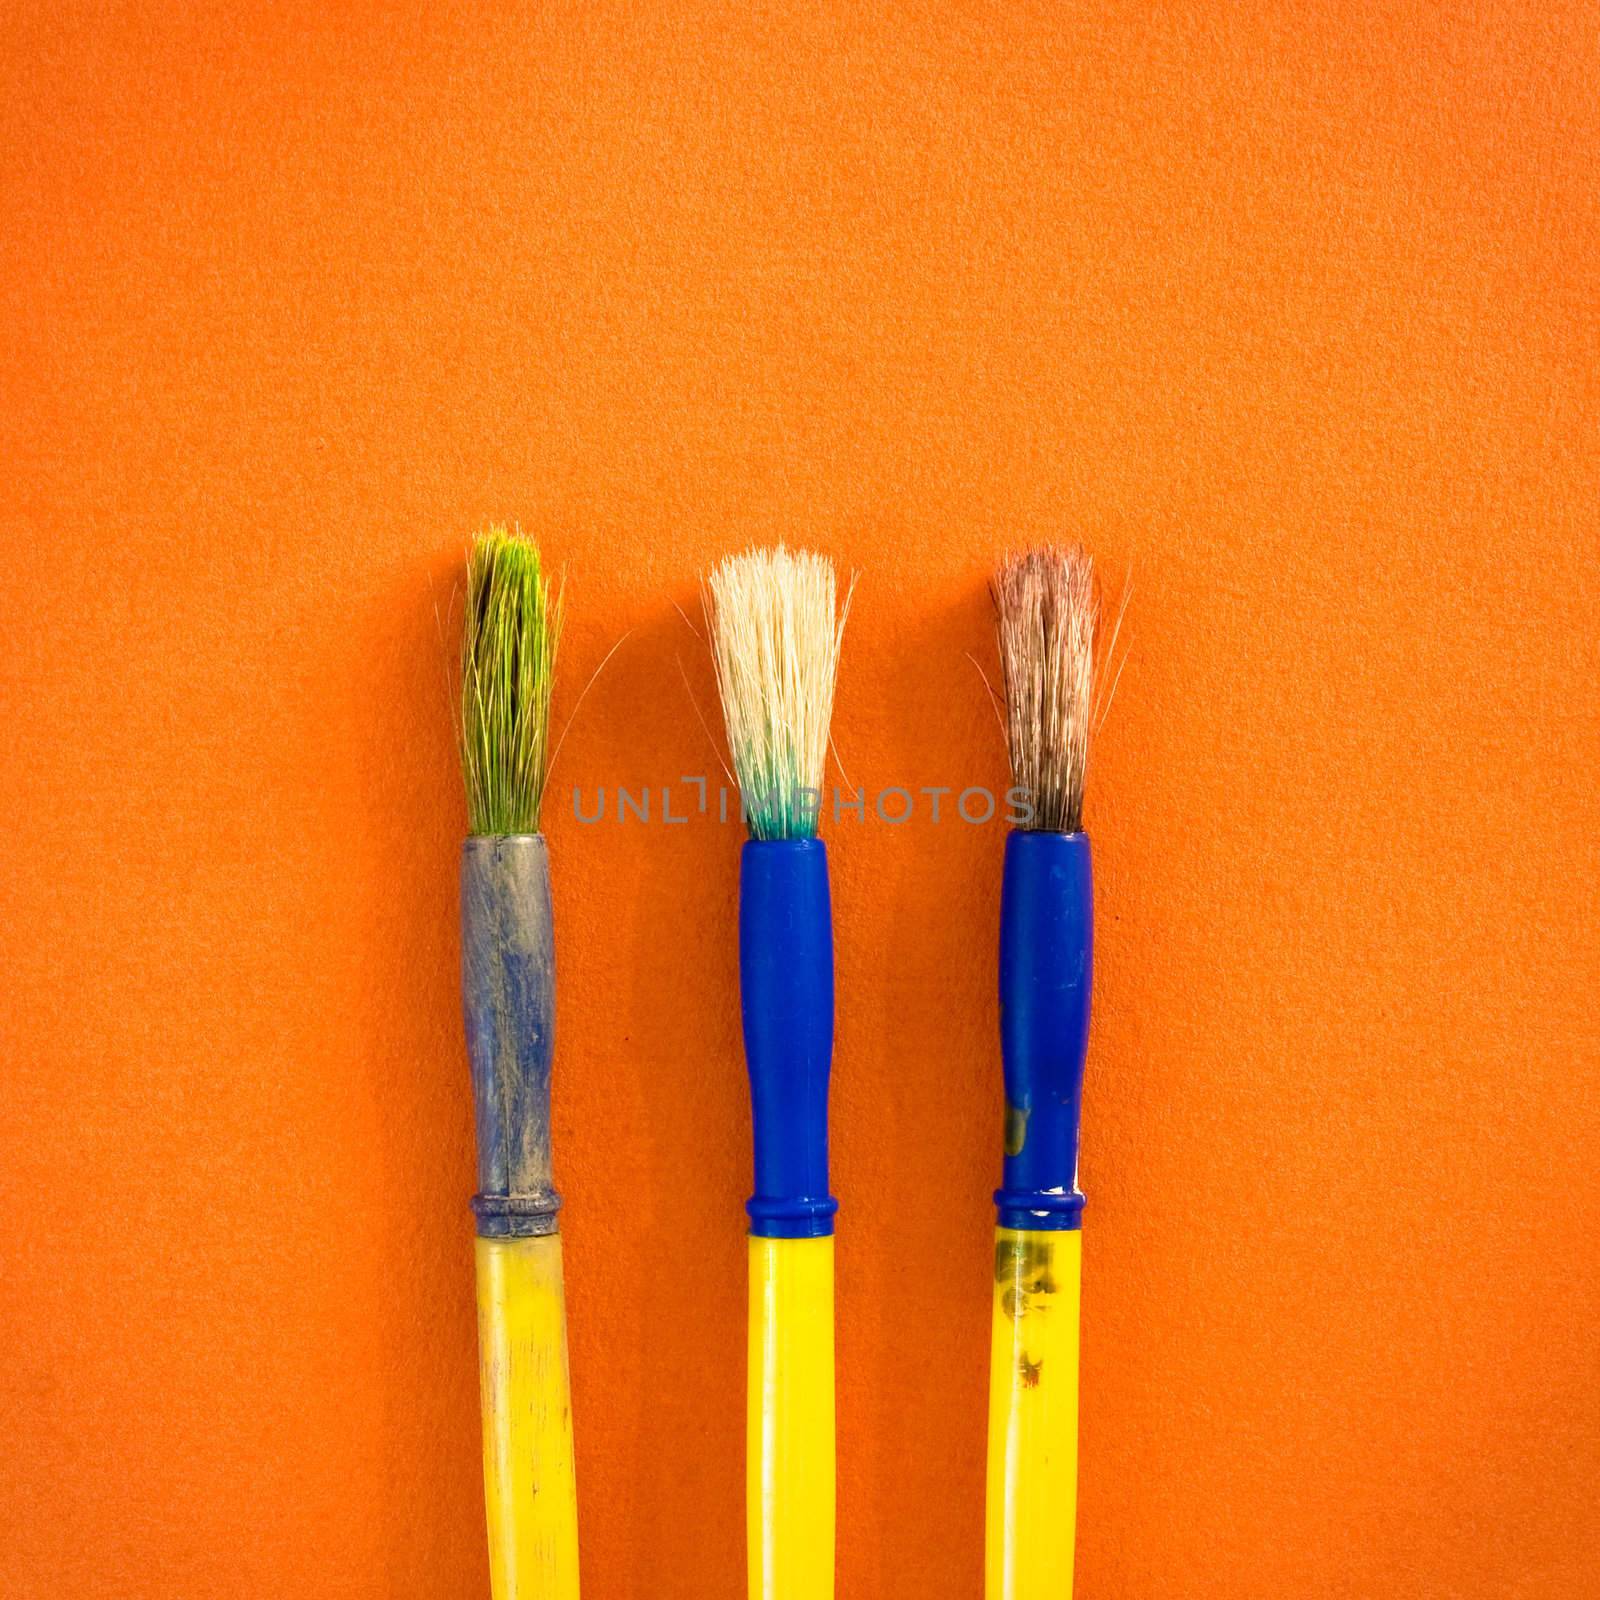 Three used paint brushes on an orange background